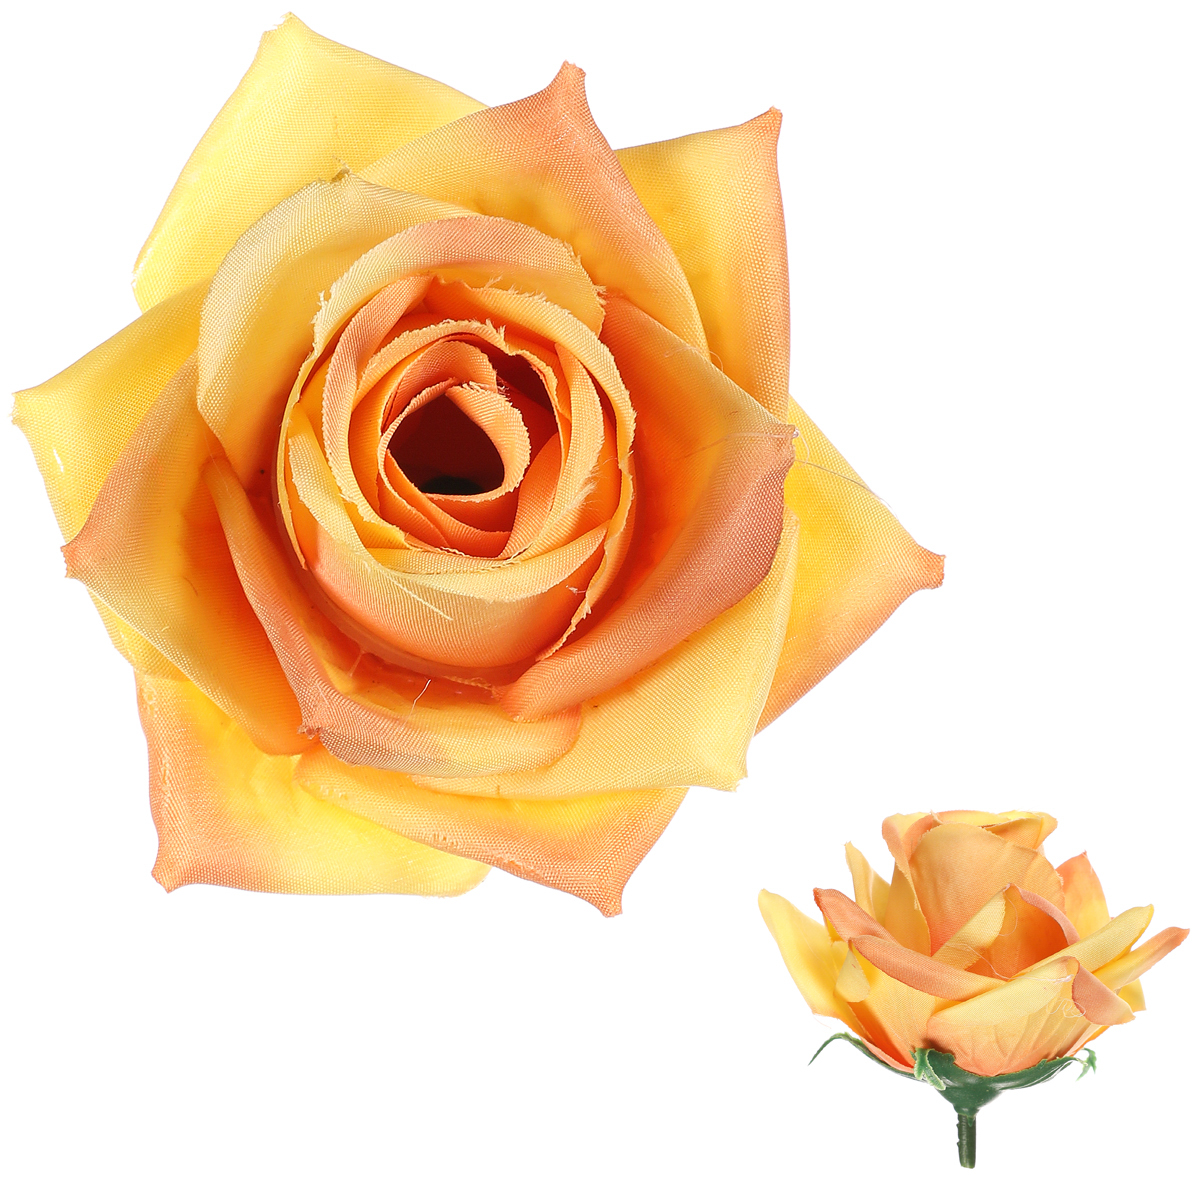 Růže, barva žlutá. Květina umělá vazbová. Cena za balení 12 kusů